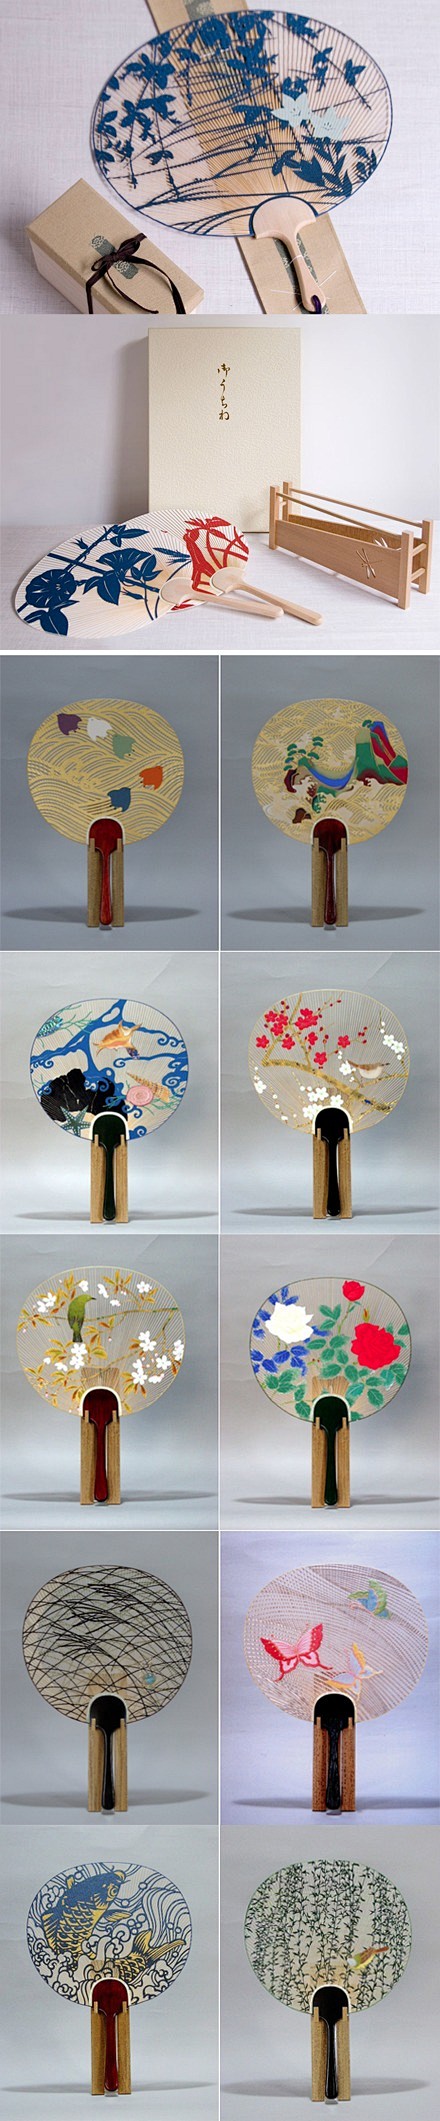 日本京都传统手工团扇 | 视觉中国